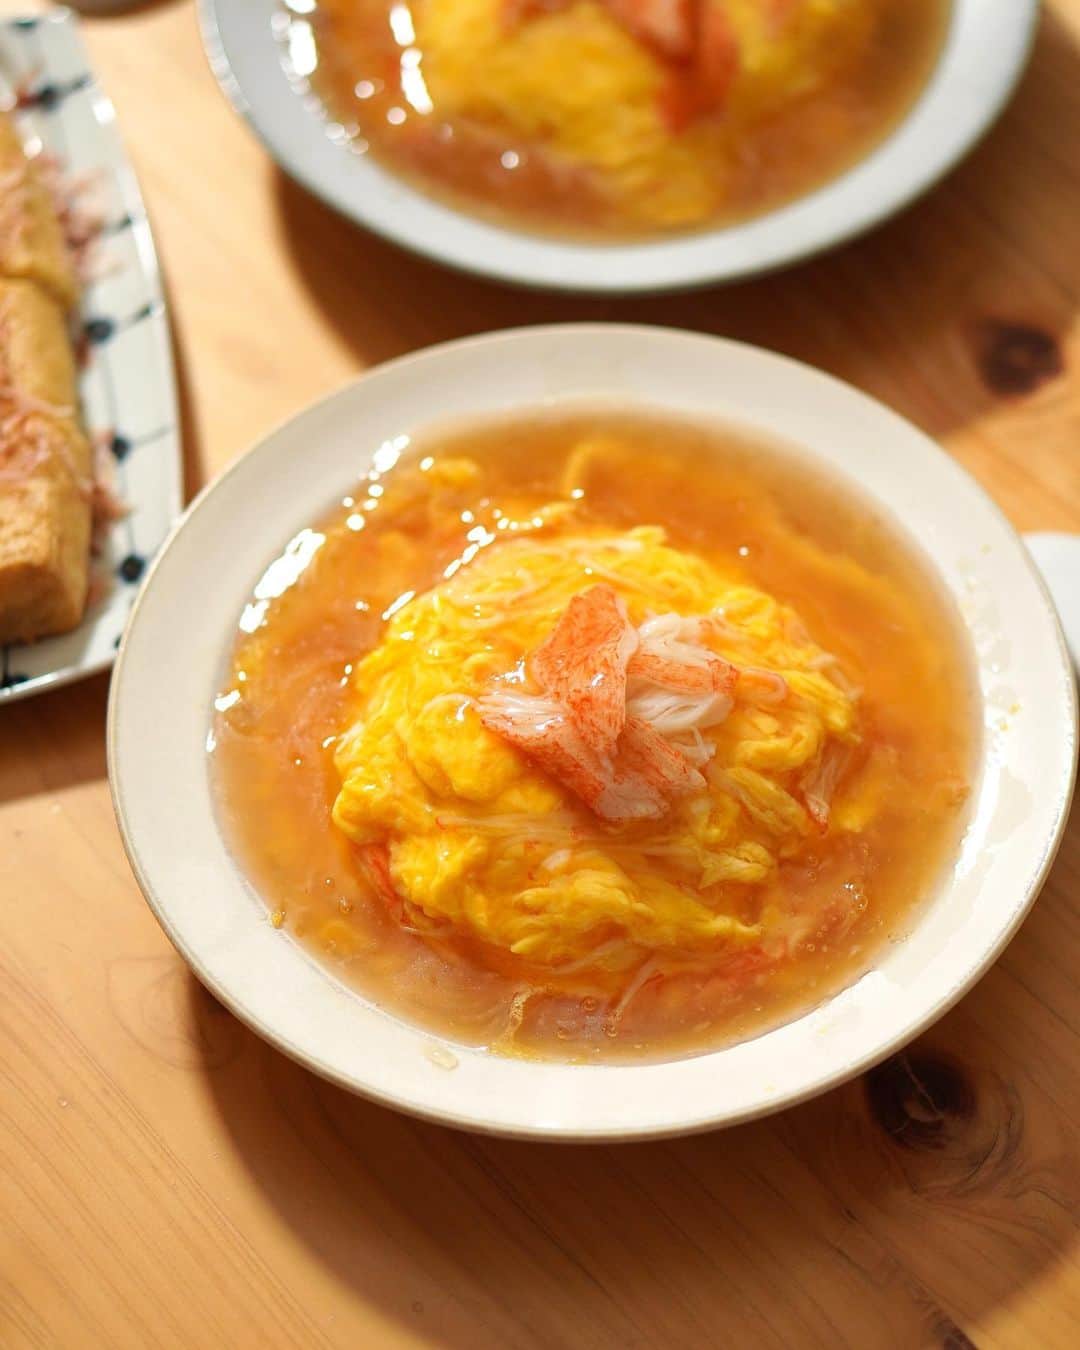 Akihiro Yoshidaのインスタグラム：「こんばんは🌃  今日は暖かったですね そろそろ花粉症の嫌な季節 ほんとに一年間マスクしっぱなしでしたね…  今日はカニカマの天津飯🟡🦀  自分は卵をとろとろ派 妻はよく焼き派  買い物してなくて、冷蔵庫にある卵とカニカマで晩ご飯🍳  蟹玉も天津飯も作るの相当久しぶり。 卵料理は毎回緊張する  天津飯といえは甘酢あんですが、京都に住んでいたときに通った王将で食べていた京風の出汁系あんかけが好き  天津飯といえば自分は京風なんです  いろいろレシピをみたのですが、 途中で酢を足してたべるので、最初から自分好みにお酢と砂糖を足して甘酢感を足してみました！なかなか美味しくできました  足しながら味を決めてたのでレシピ分量が曖昧ですが笑笑ちょっと再現性自信無し💦  あんが好きなのであんだくの分量でつくってます  ■レシピ ご飯…おこのみで カニカマ…4-5本 溶き卵…4-5 塩胡椒…少々 >あん 水…400ml あんだく 鶏ガラスープの素…小1強 薄口しょうゆ…小2 酒…大1 酢…小2 砂糖…小1 水溶き片栗粉…大3-4  step1️⃣. あんは煮立たせたら火を弱めて水溶き片栗粉をいれてとろみをつける step2️⃣.ボウルに溶き卵と塩胡椒カニカマをほぐし入れて混ぜ合わせる。フライパンに油をいれて熱する。卵を流し入れて素早く菜箸でかきまぜてふんわりと step3️⃣. 丼にごはんを盛り付けて、卵をのせて、あんをかけて、追いカニカマして出来上がり  #akihiroy#中華#天津飯#かにかま#カニカマ#中華料理#家中華 #卵 #卵料理 #たまご料理 #玉子丼 #天津丼#カニカマレシピ #かにかま入り卵焼き#フーディーテーブル#おうちごはん#節約ごはん #節約レシピ #節約#簡単レシピ」